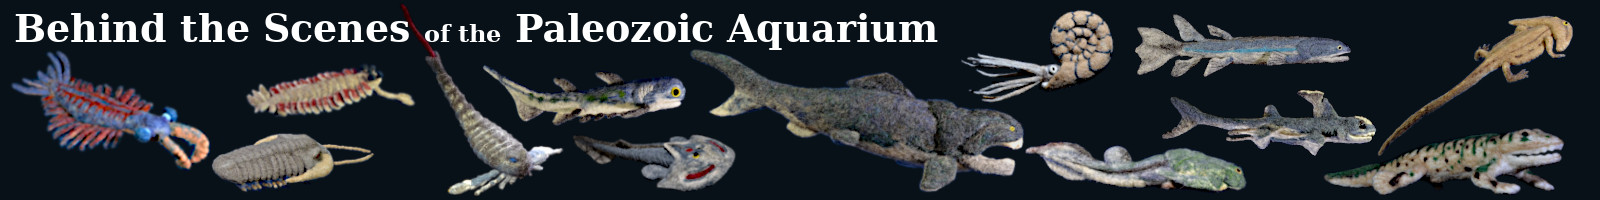 behind the scenes of the paleozoic aquarium banner